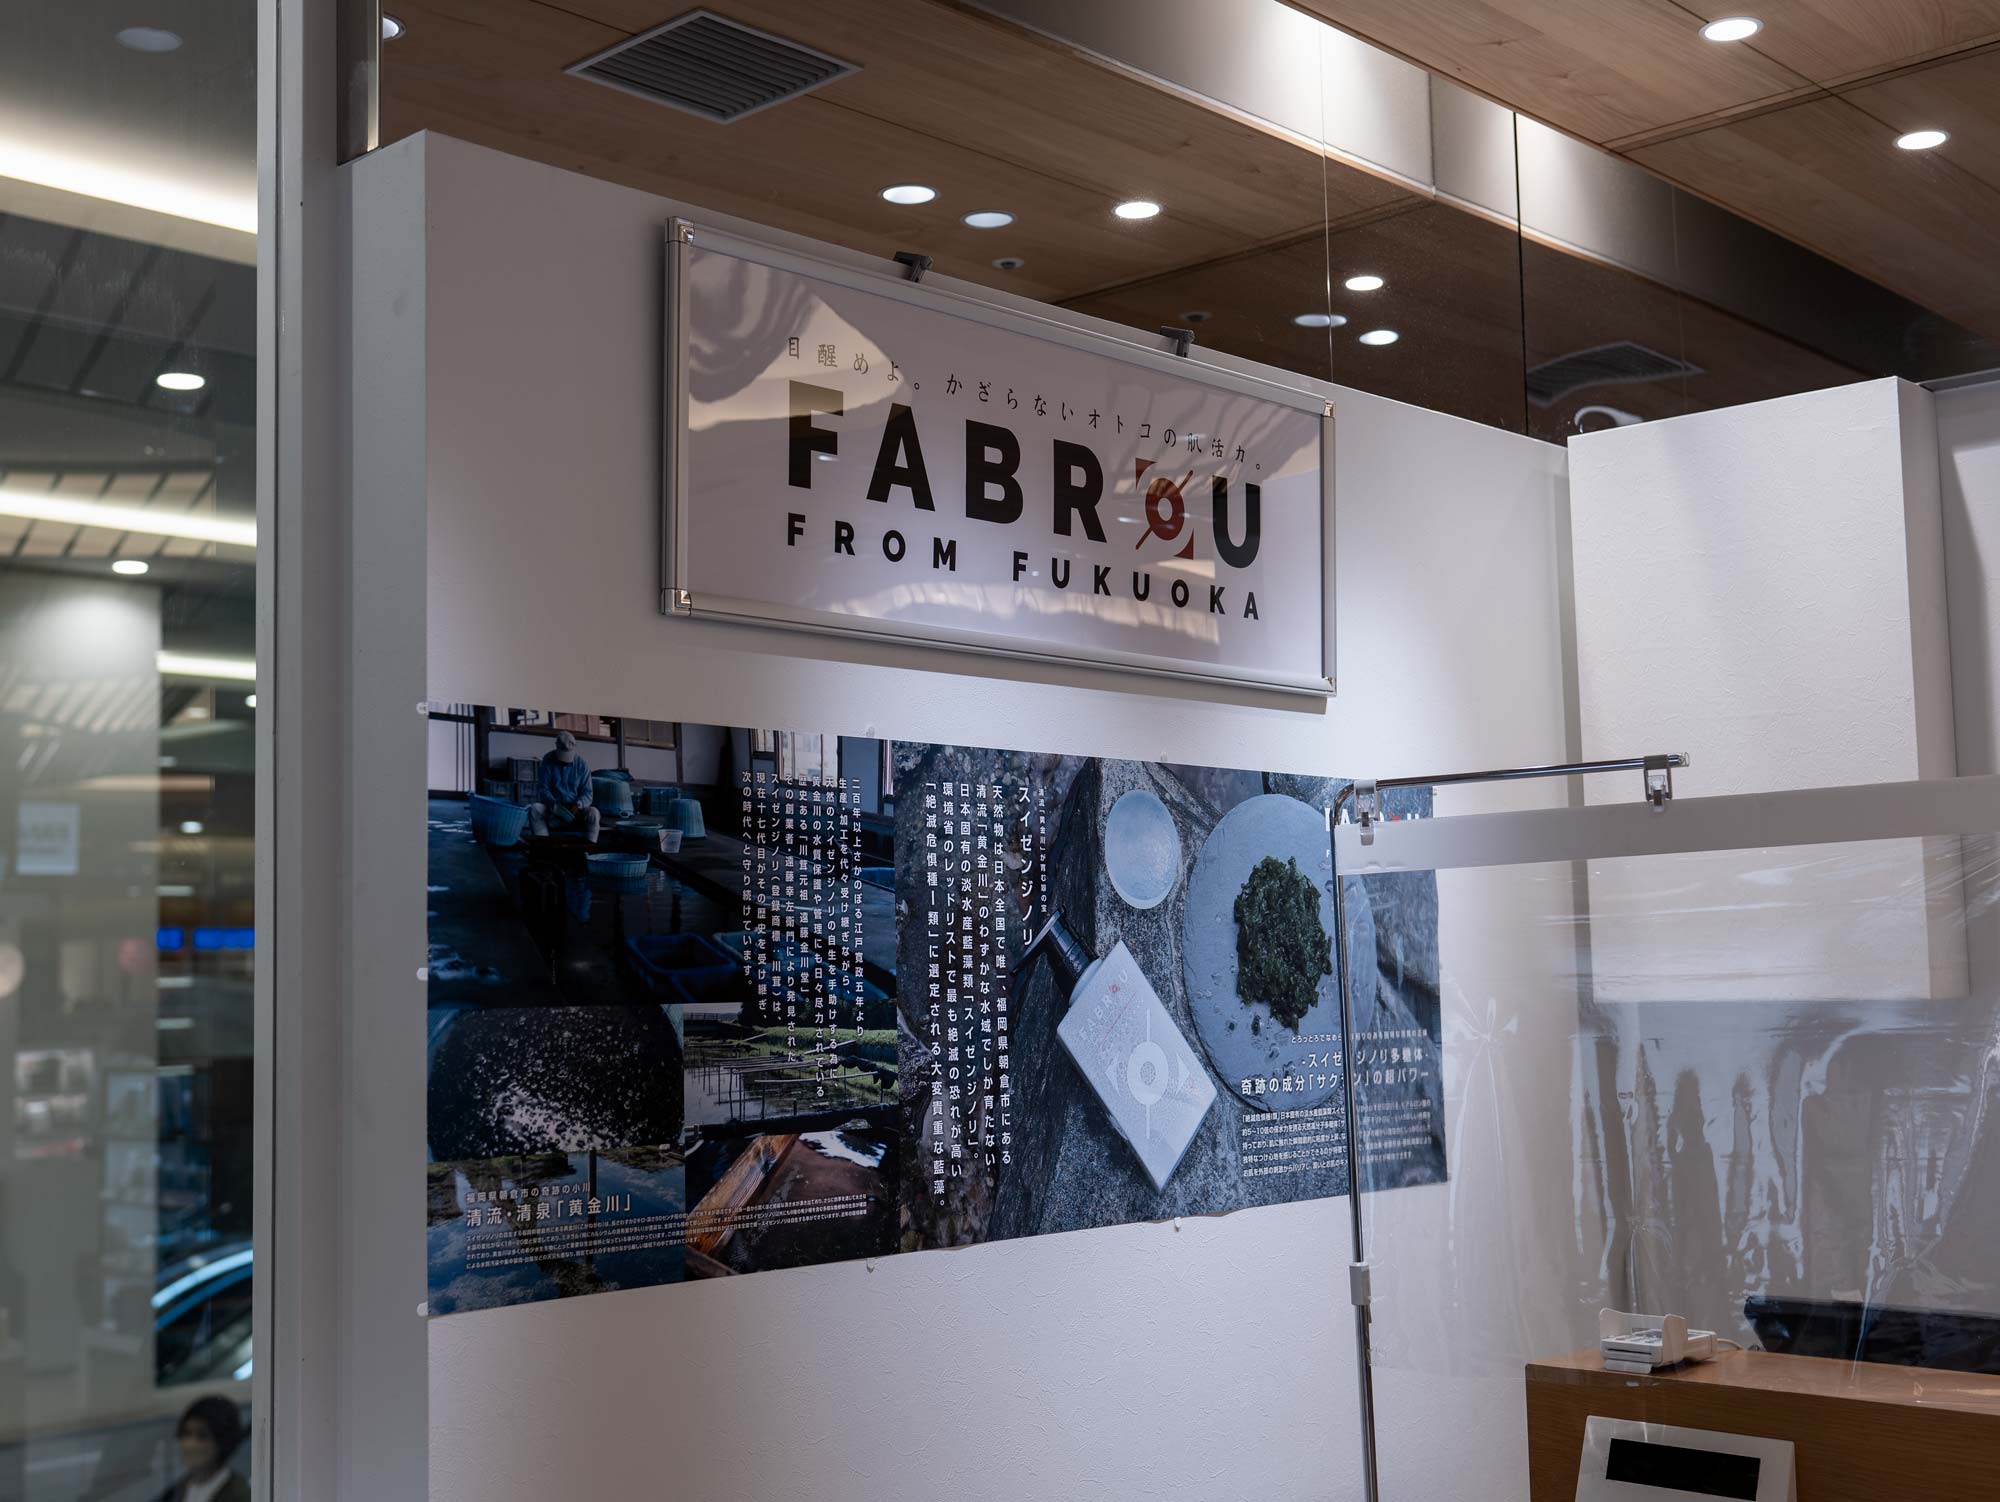 FABROUポップアップストアの壁に飾られたファブロウロゴパネルとスイゼンジノリノ写真